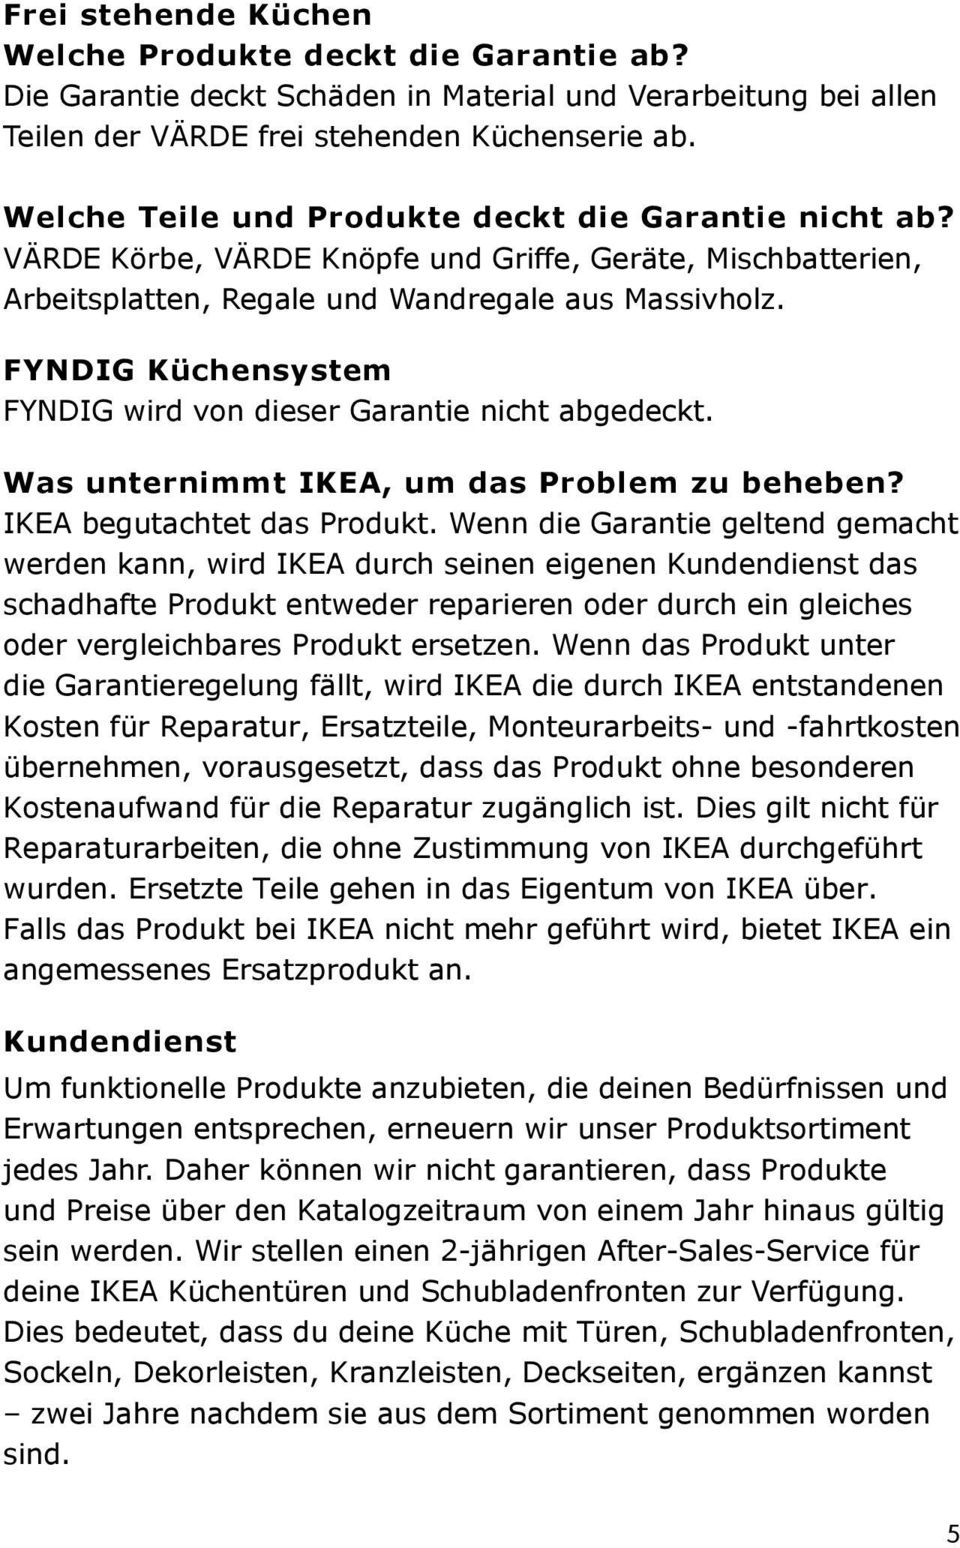 FYNDIG Küchensystem FYNDIG wird von dieser Garantie nicht abgedeckt. Was unternimmt IKEA, um das Problem zu beheben? IKEA begutachtet das Produkt.